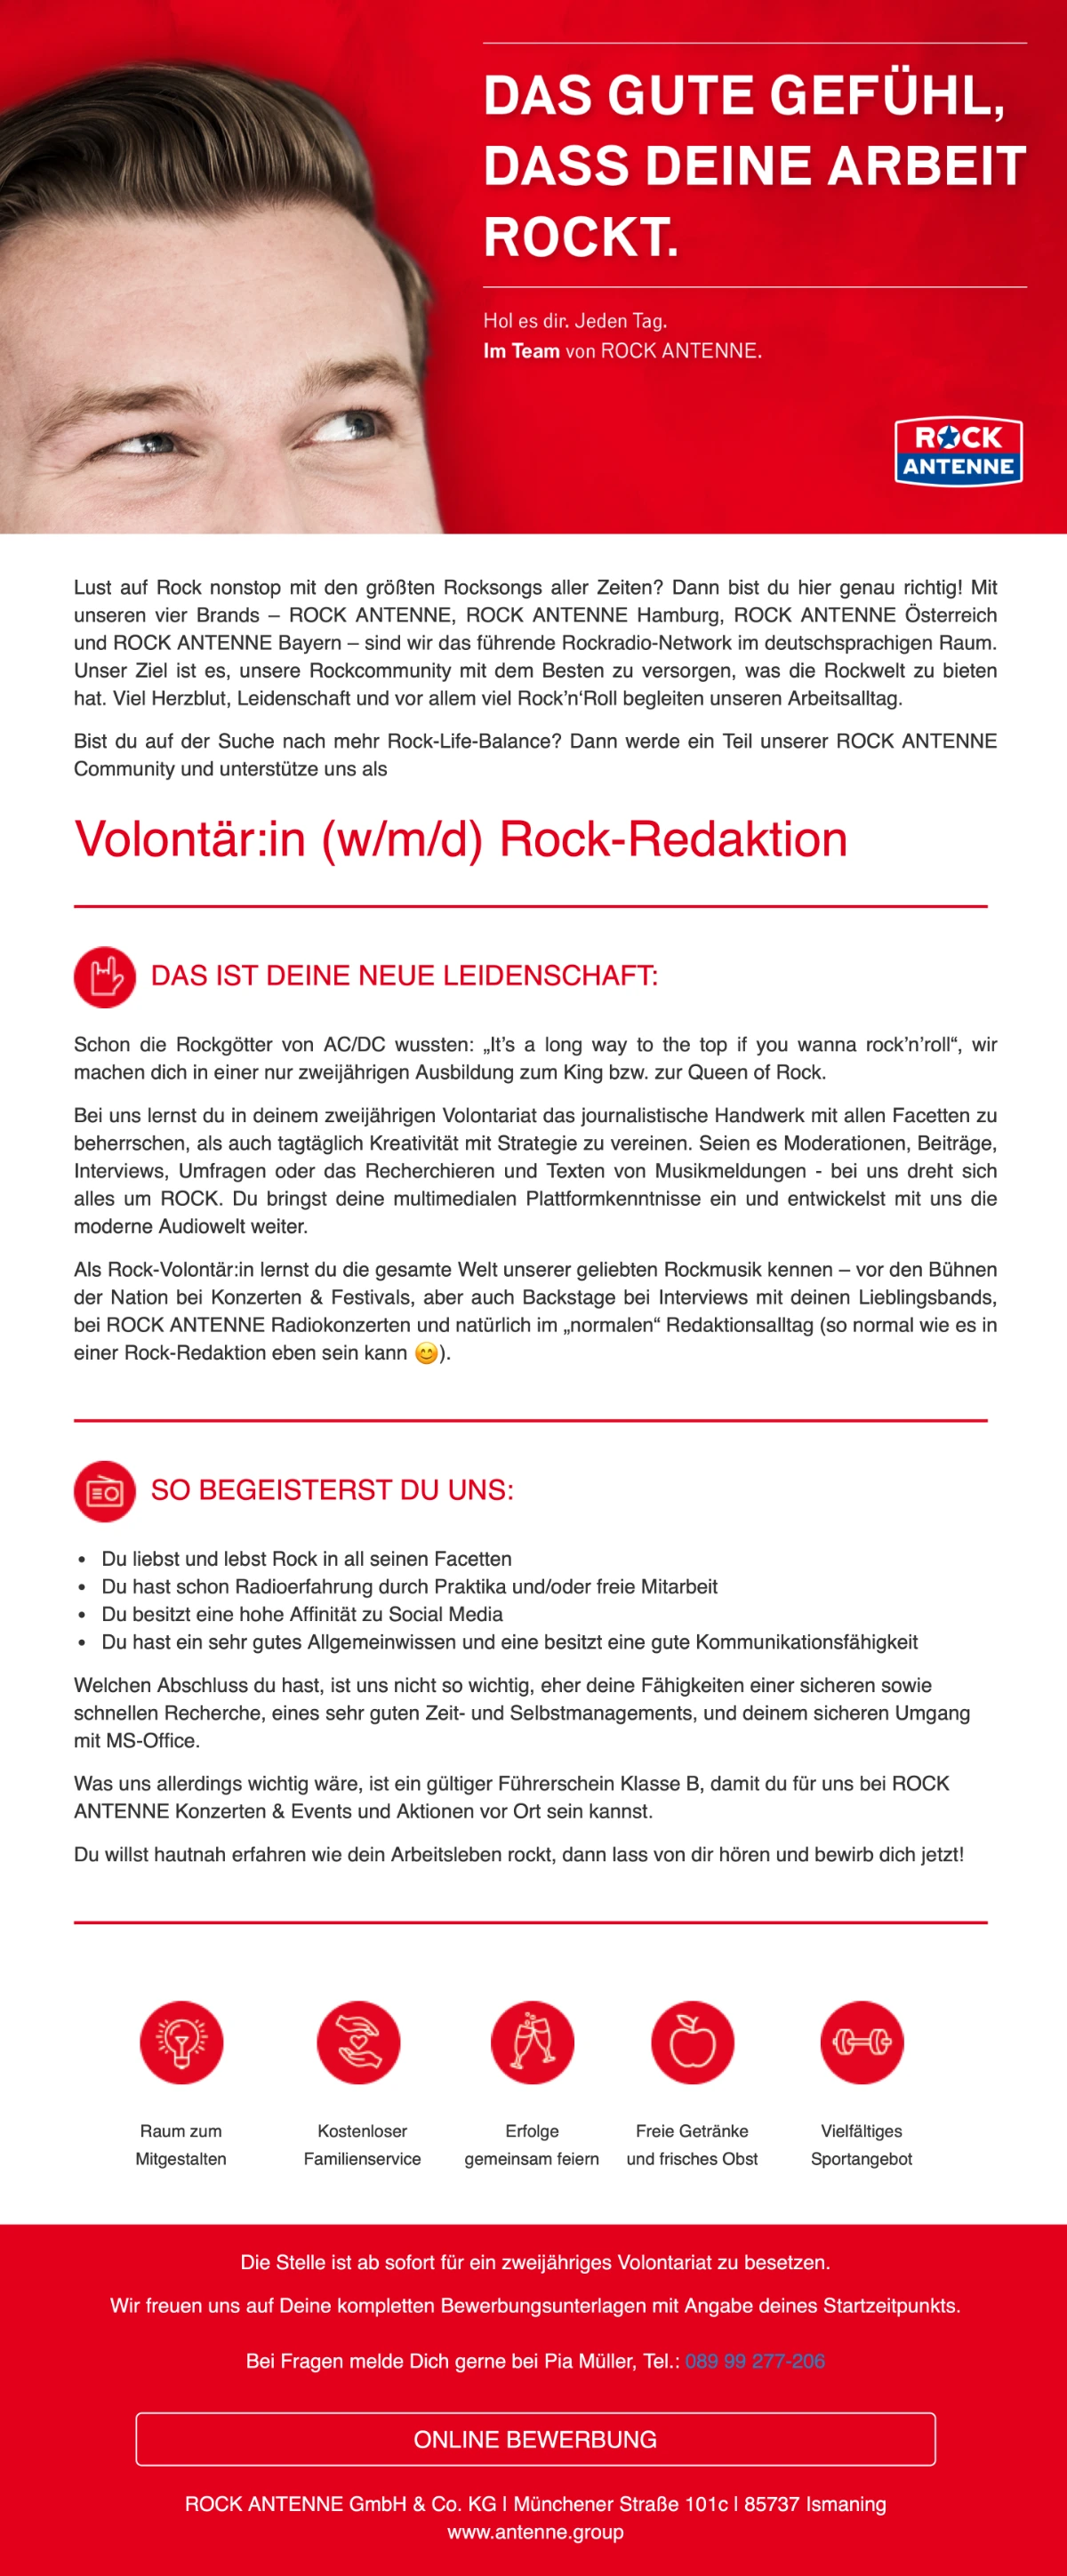 ROCK ANTENNE sucht Volontär:in (w/m/d) Rock-Redaktion